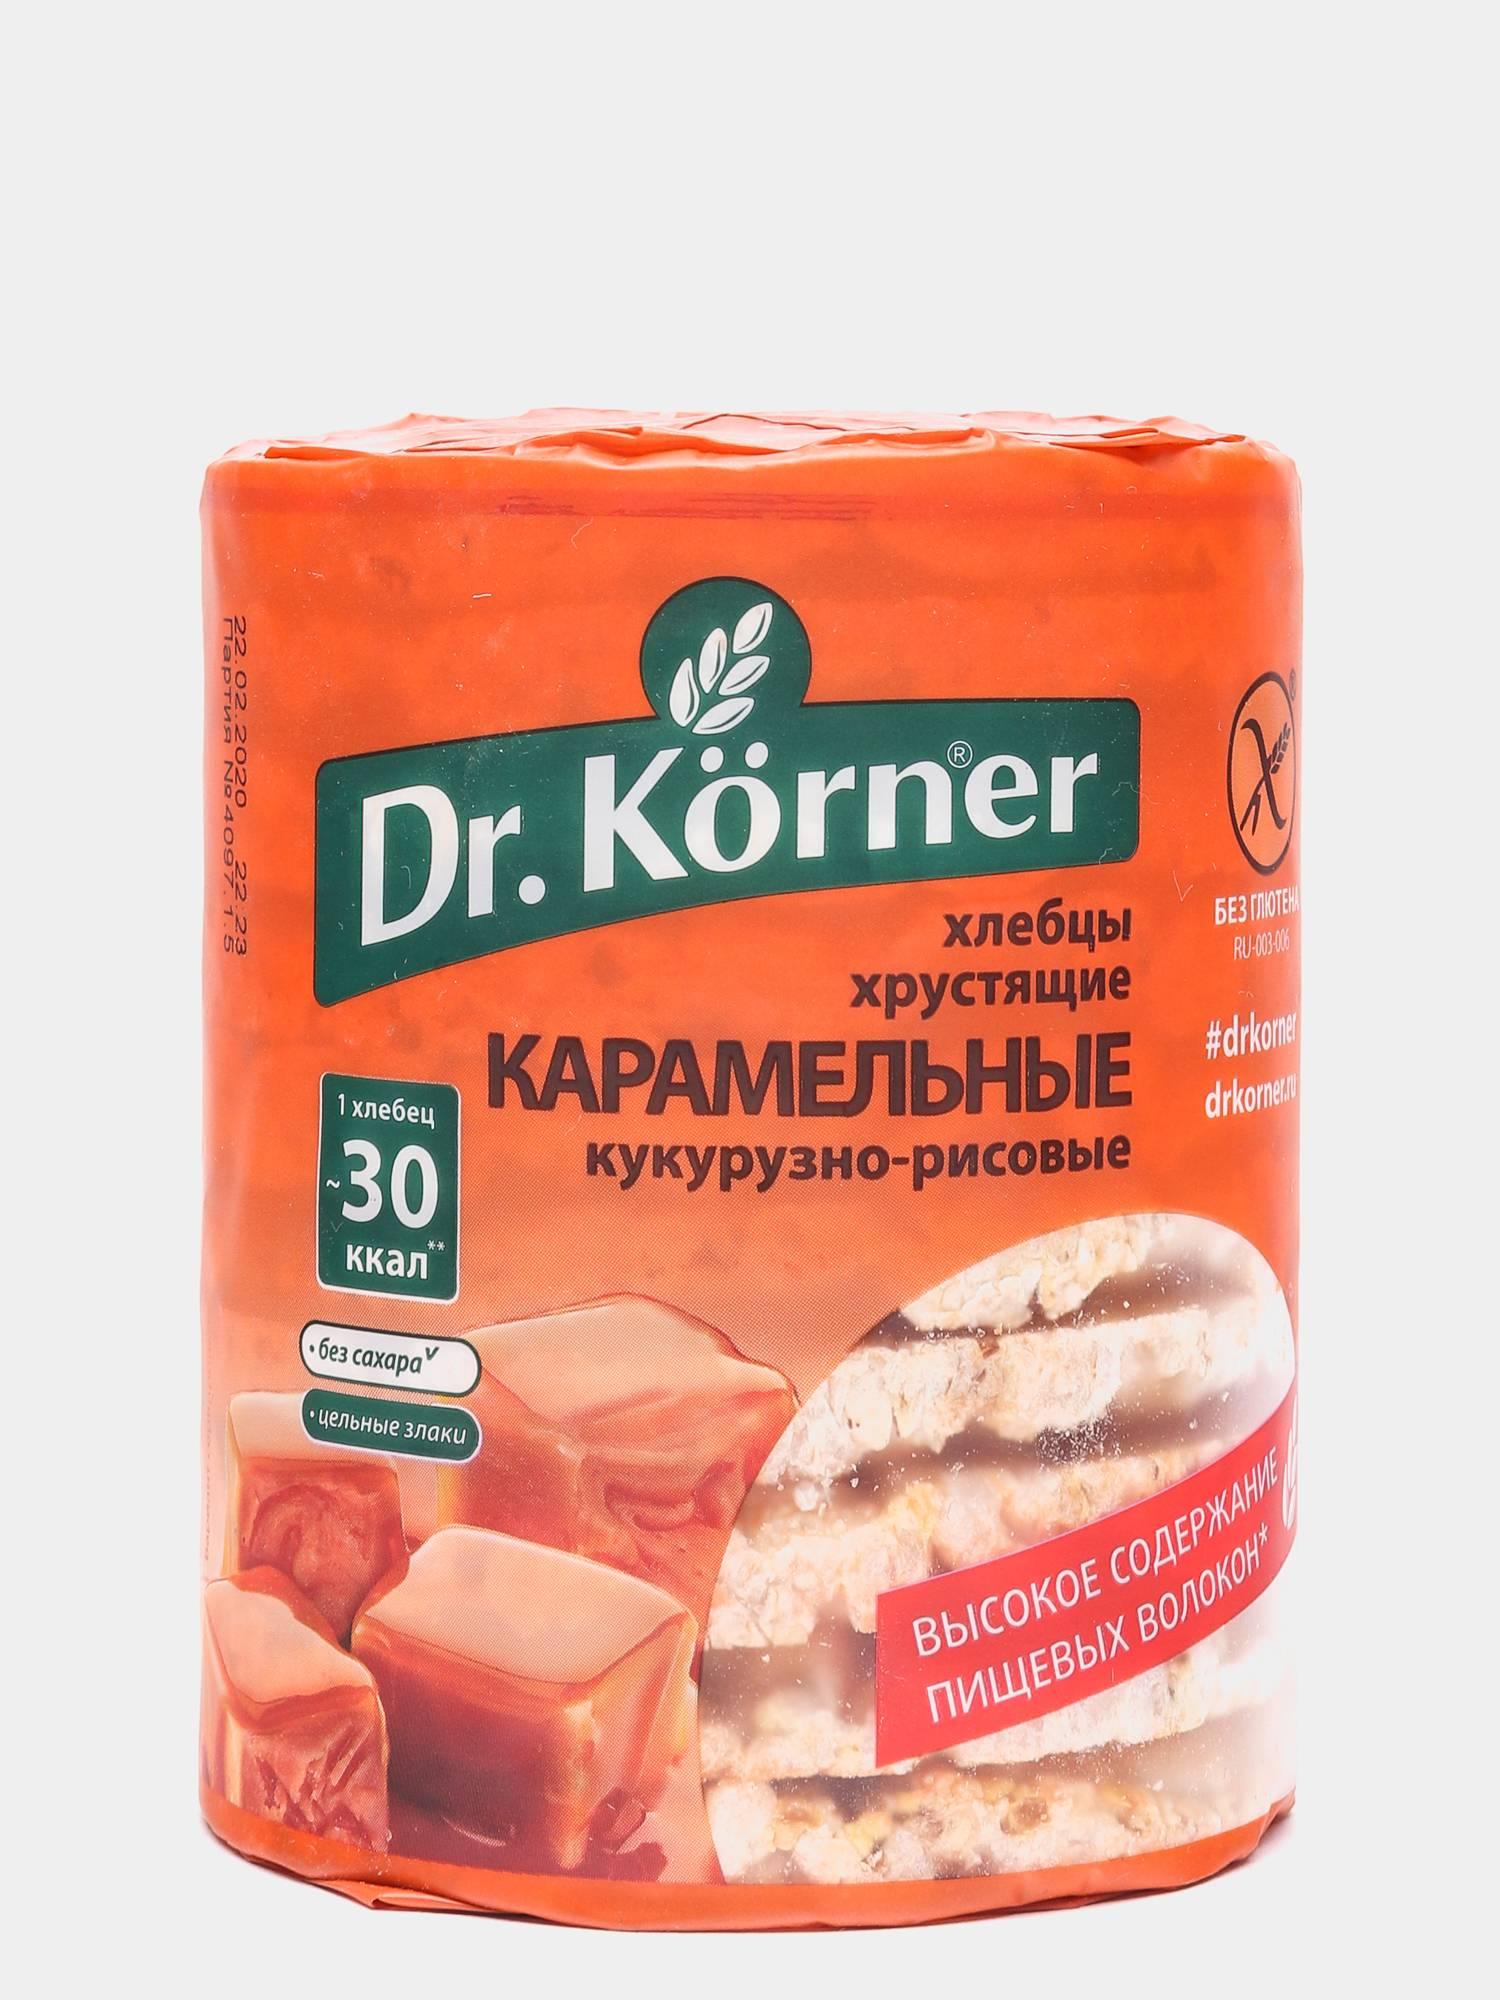 Хлебцы Dr. Korner Карамельные кукурузно-рисовые без глютена 90 гр., флоу-пак